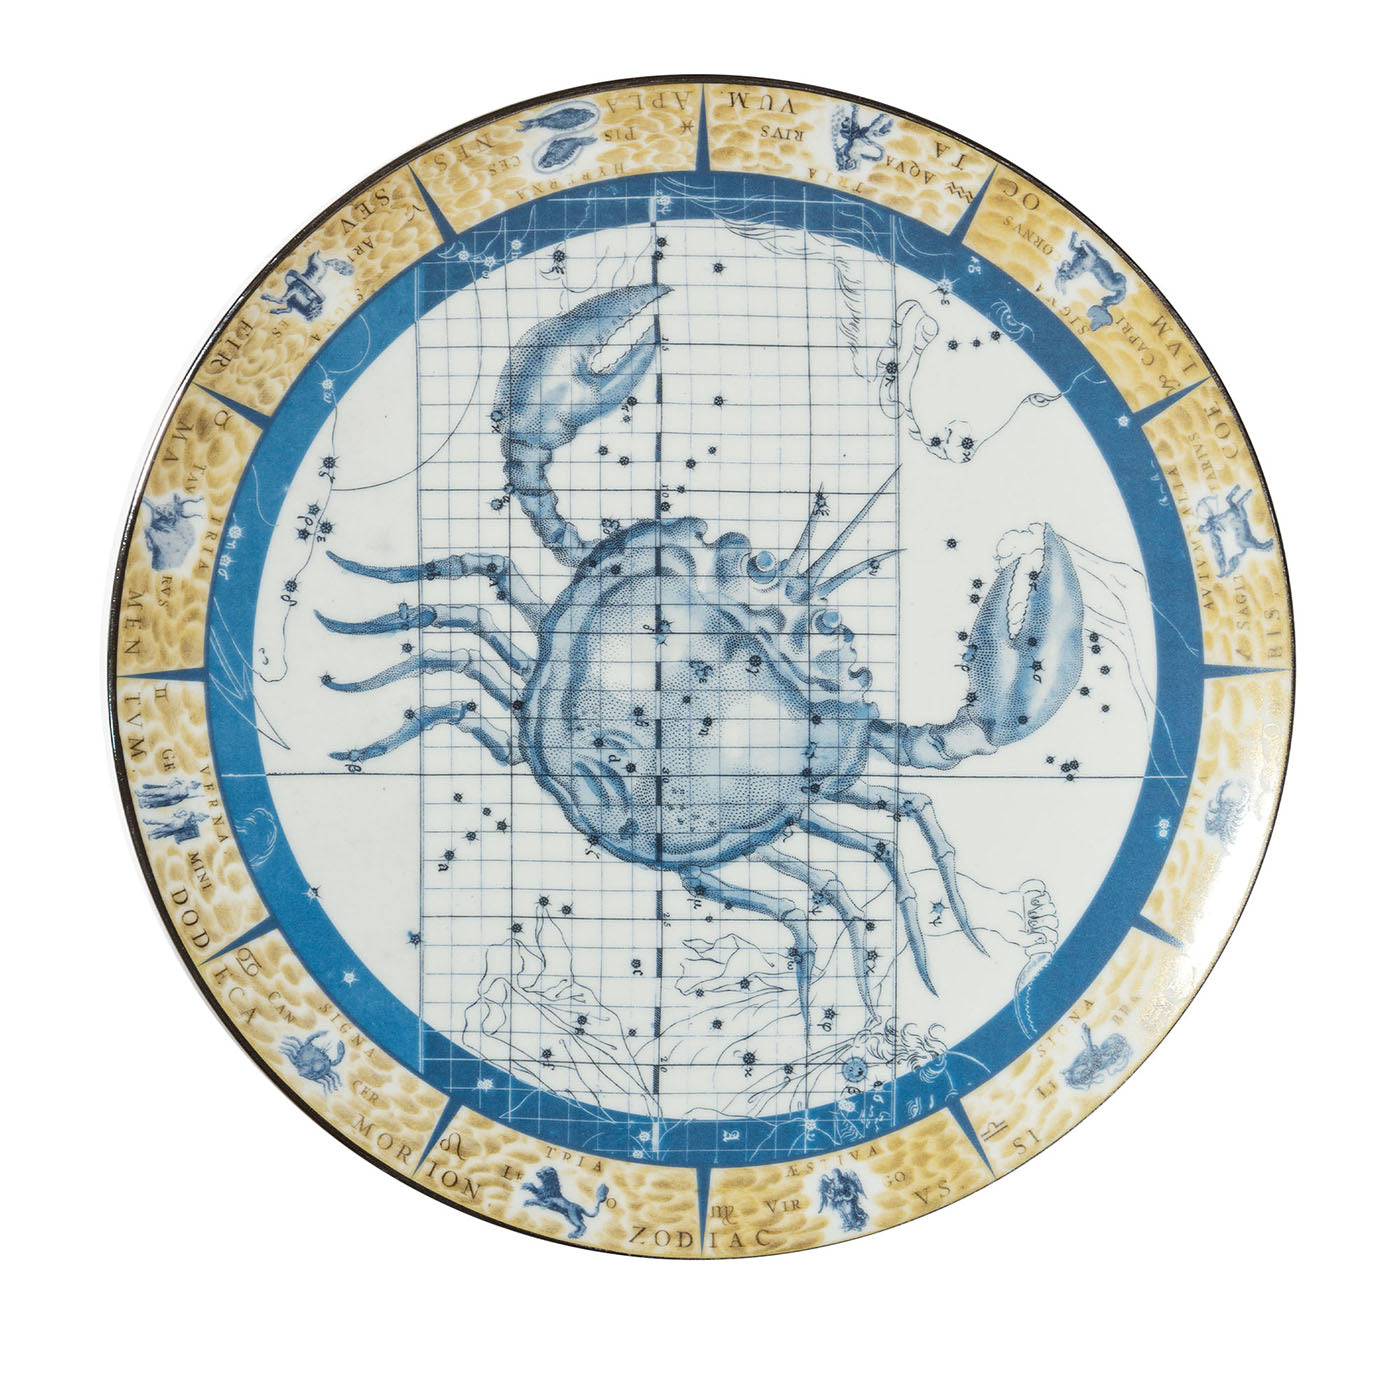 Zodiacus Cancer decorative porcelain plate - Main view